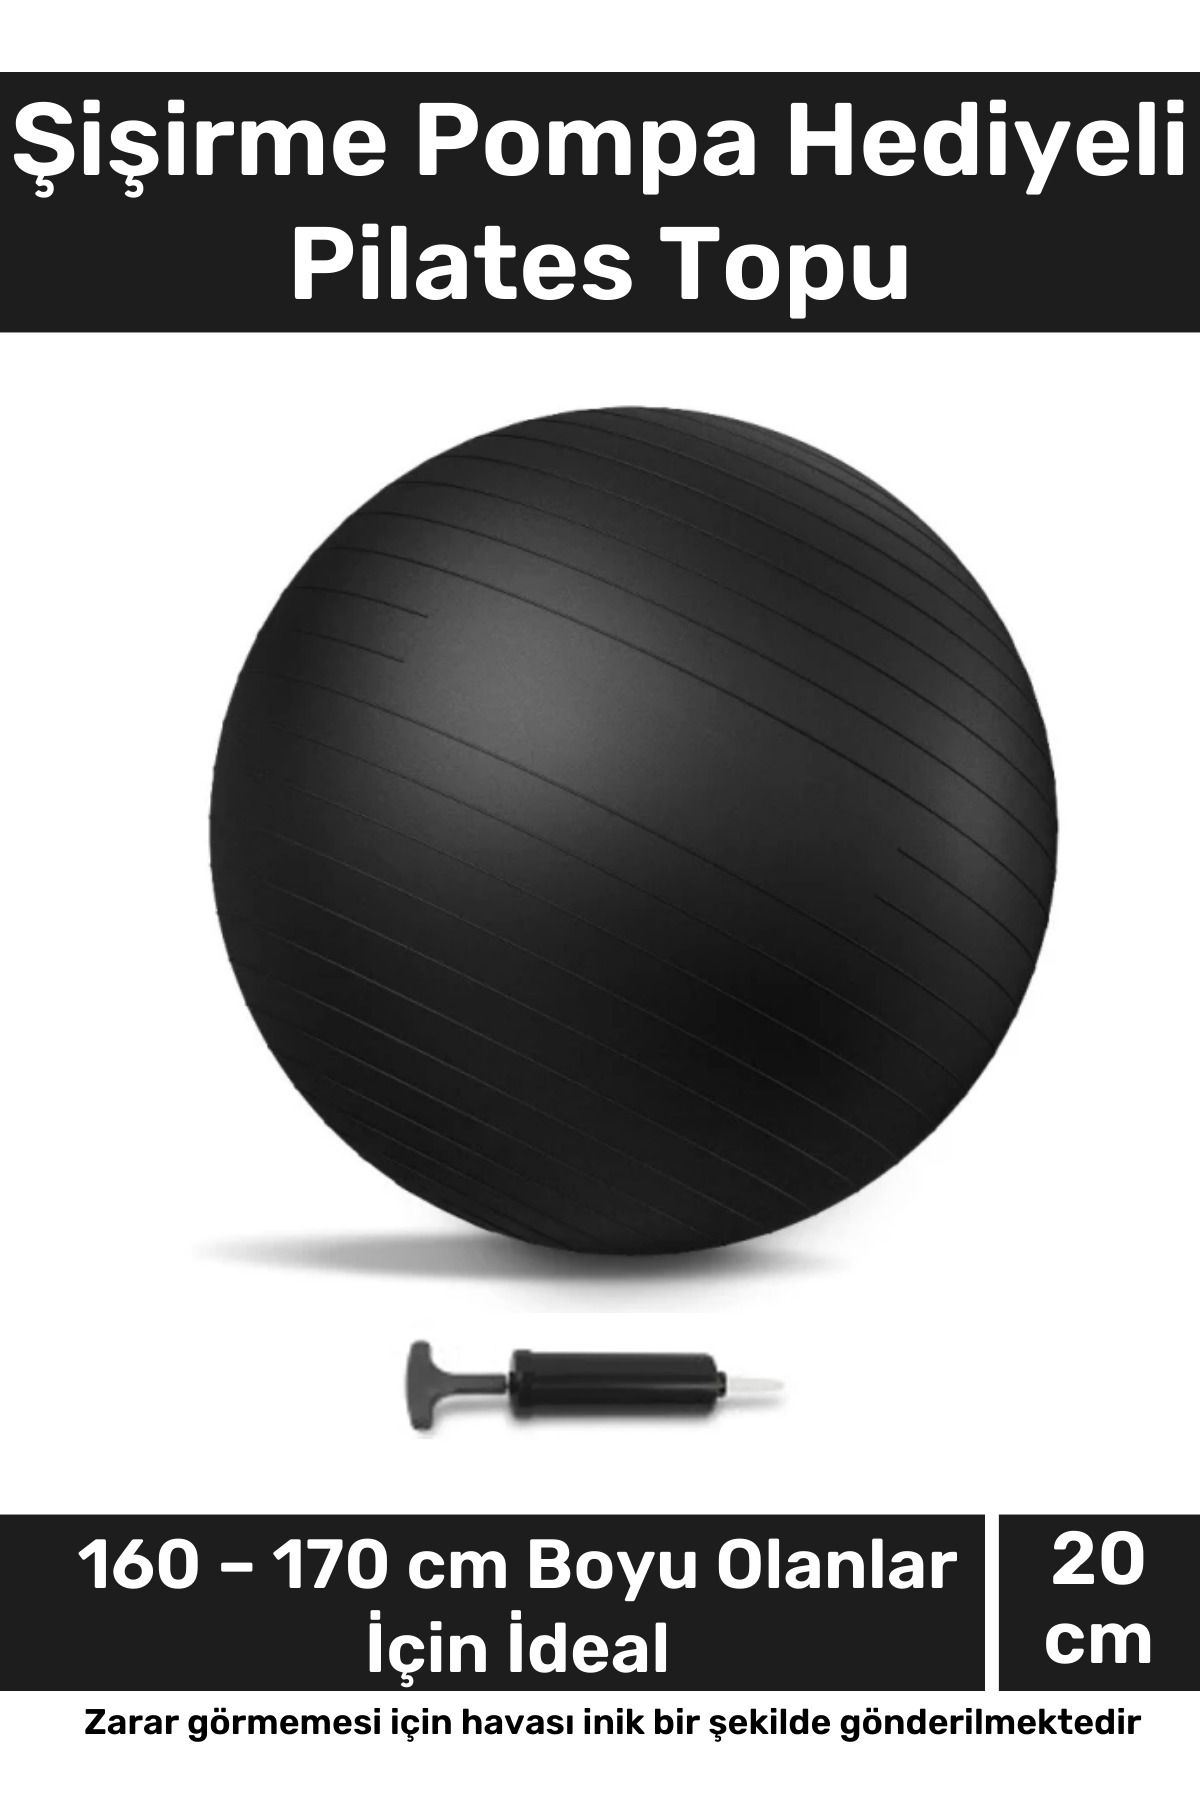 Carlburn i Dayanıklı Mini Gymball 20cm Siyah Pilates Topu Şişirme Pompa